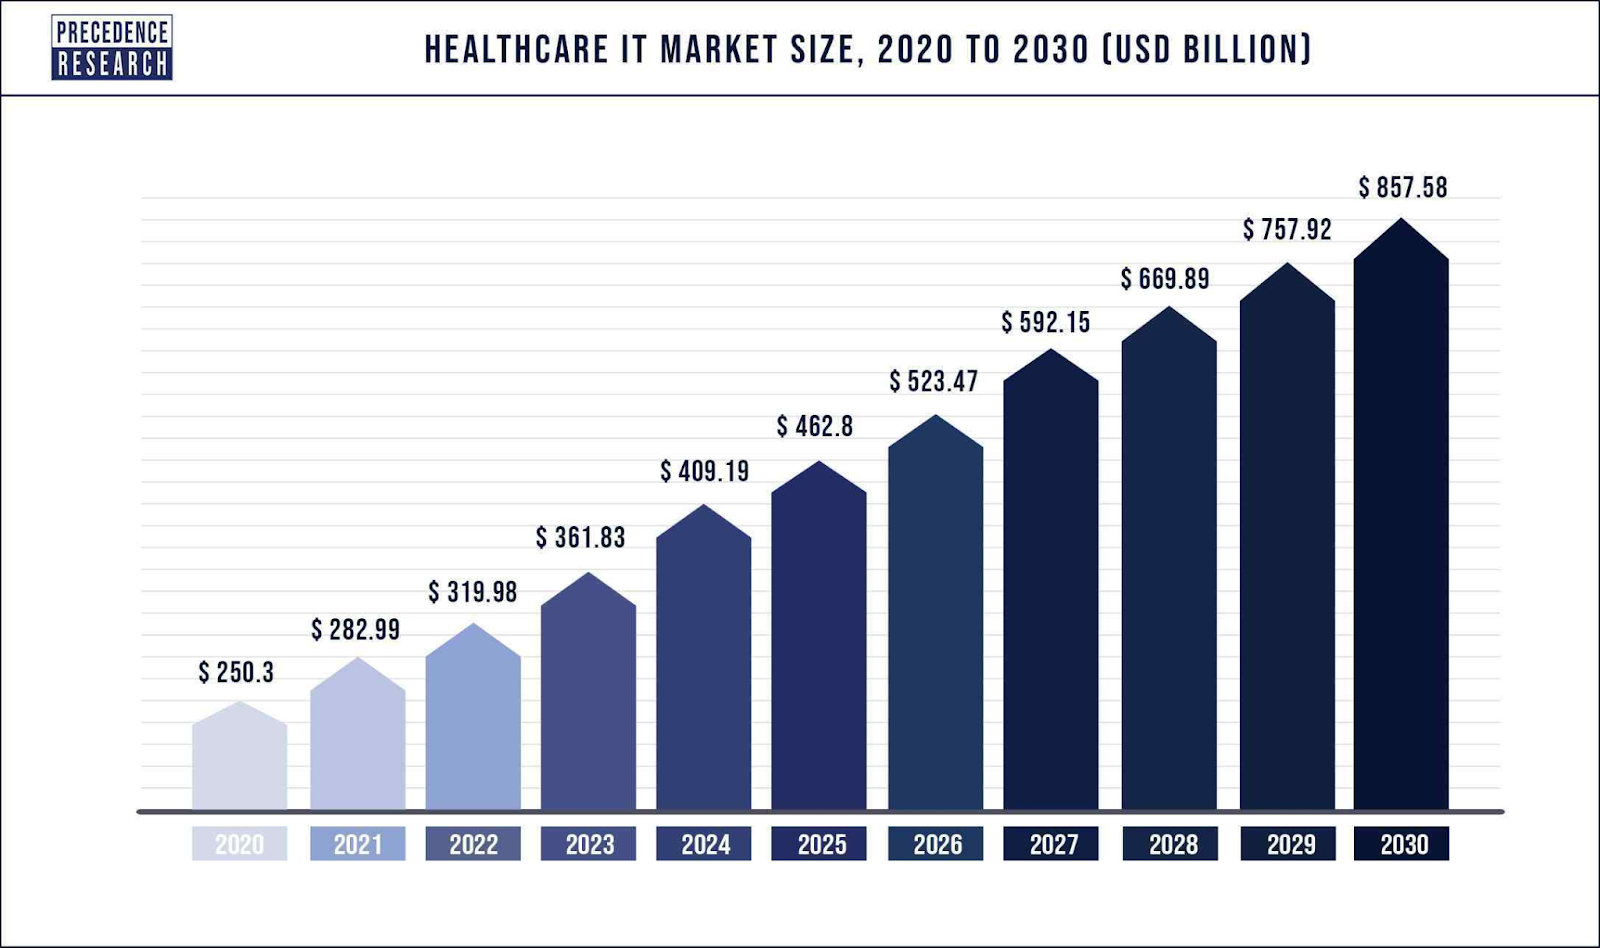 醫療保健市場概述